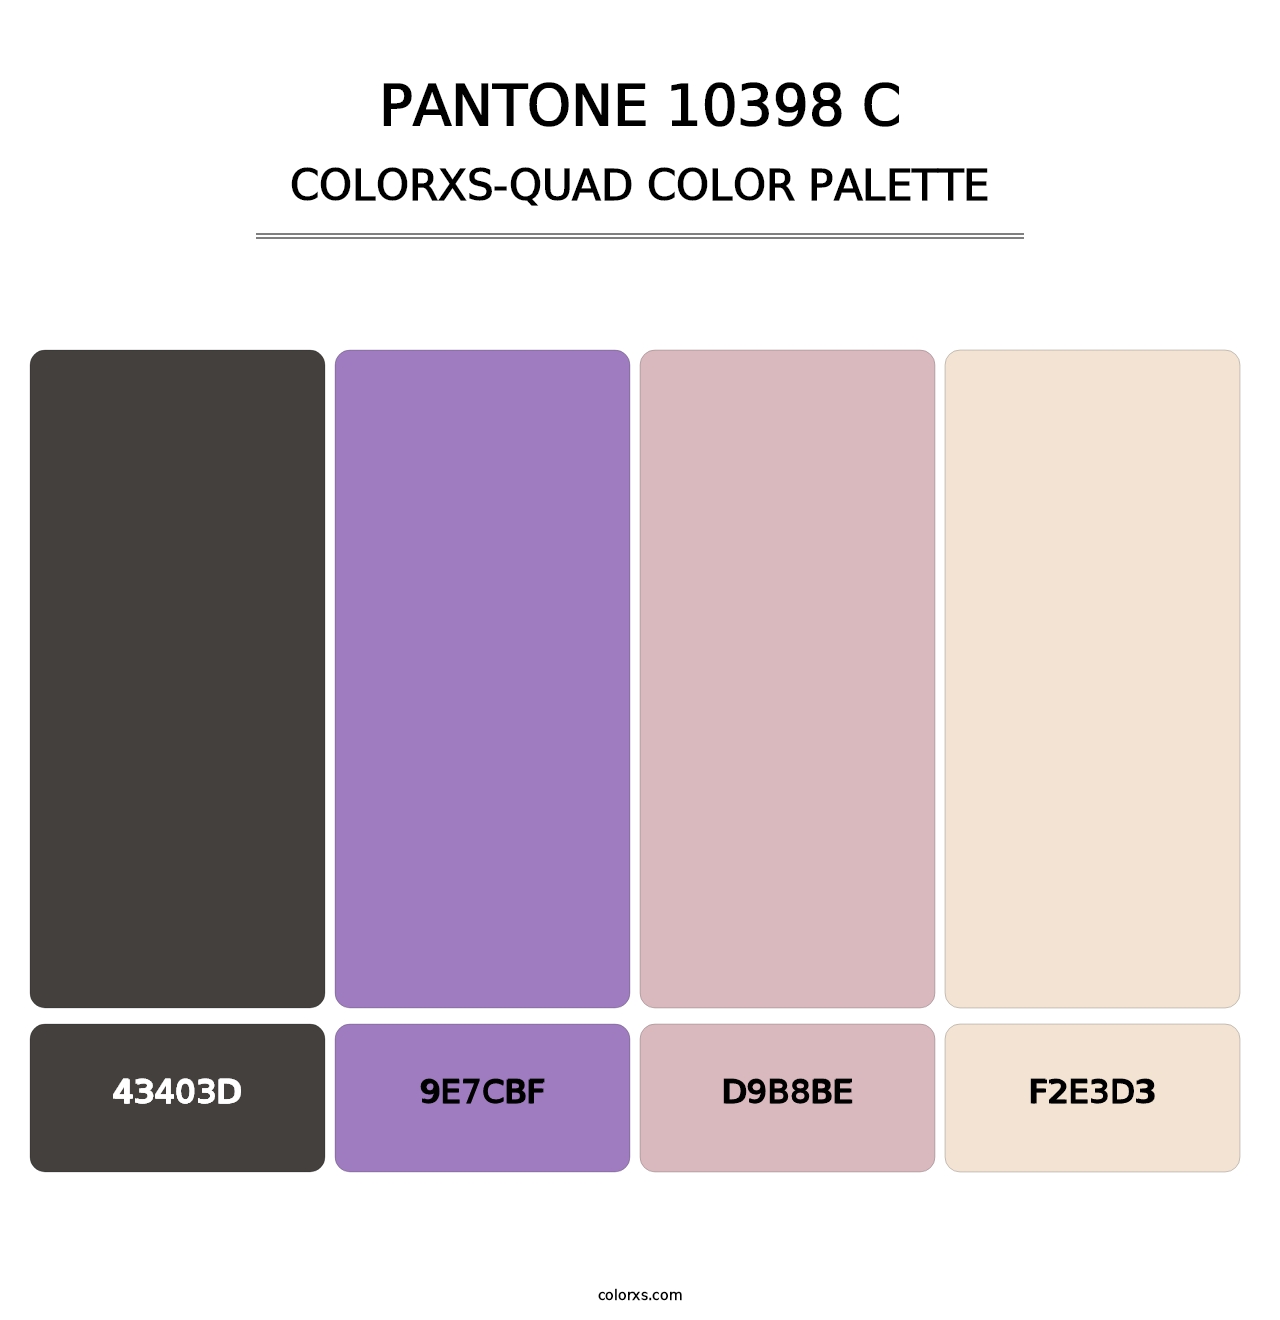 PANTONE 10398 C - Colorxs Quad Palette